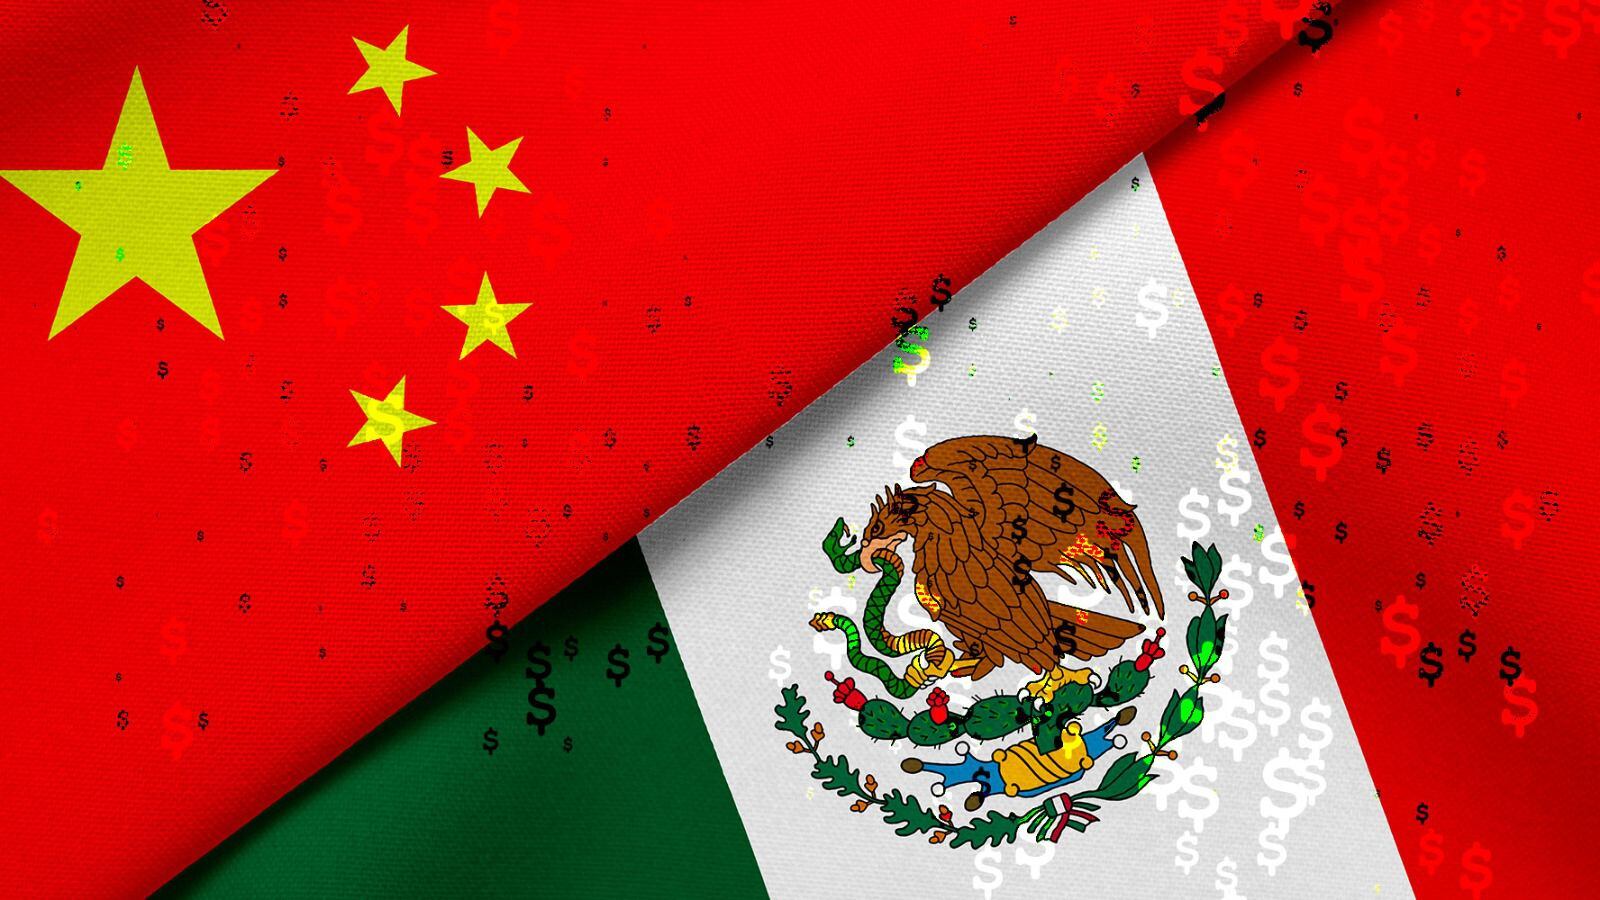 La economía de México también ha realizado ventas internacionales a China. (Shutterstock)